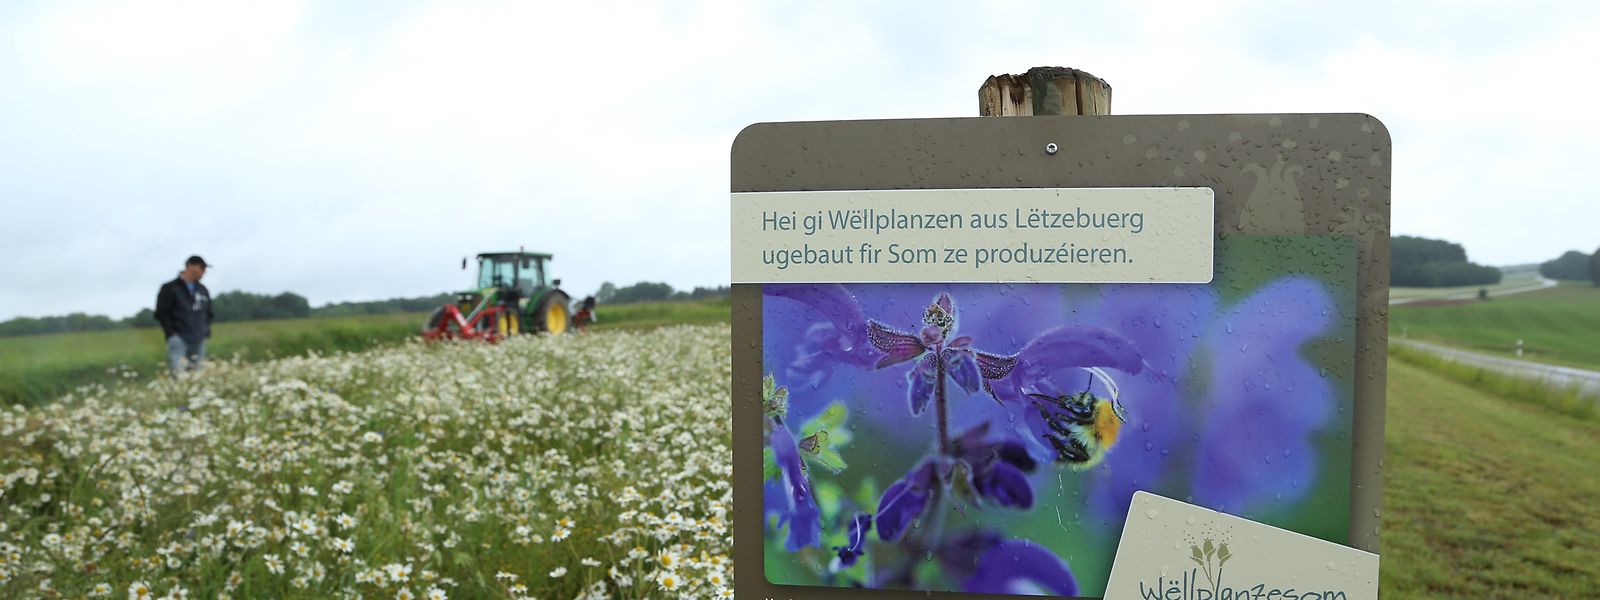 Mittlerweile werden zur Samengewinnung mehr als 60 Wildpflanzenarten in Luxemburg kultiviert, wie hier auf einem Feld entlang des CR304 zwischen Redingen und Hostert.